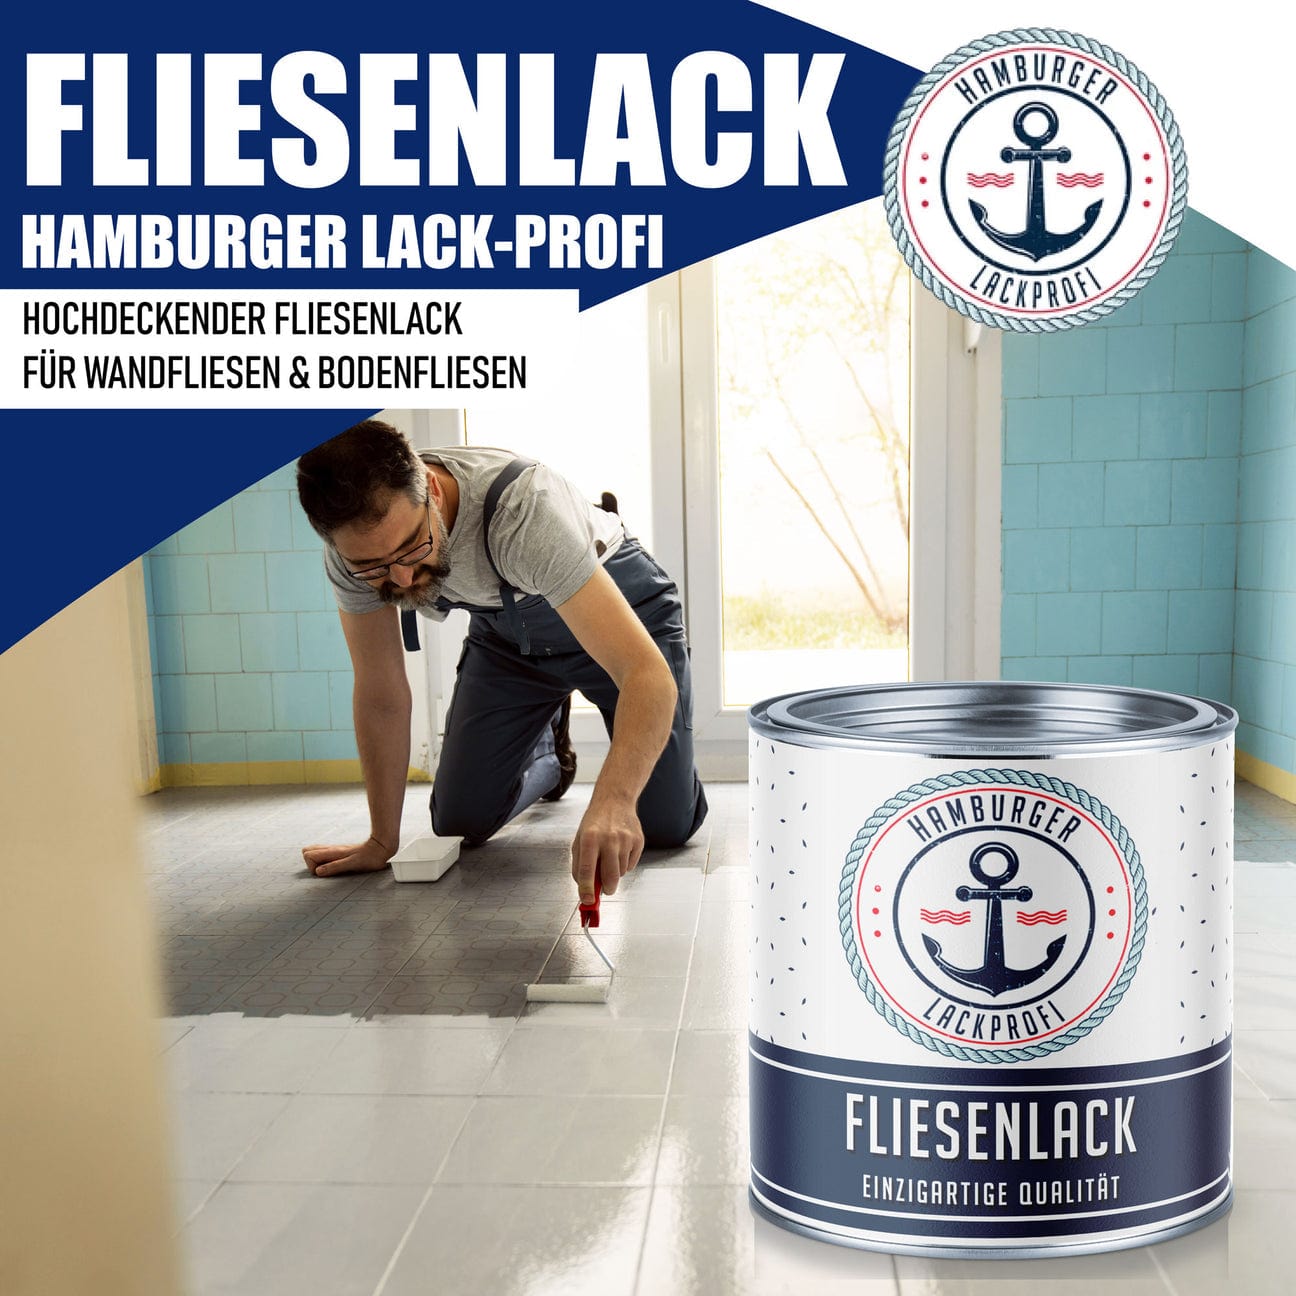 Hamburger Lack-Profi Hamburger Lack-Profi Fliesenlack Signalweiß RAL 9003 - hochdeckende Fliesenfarbe Schwarz